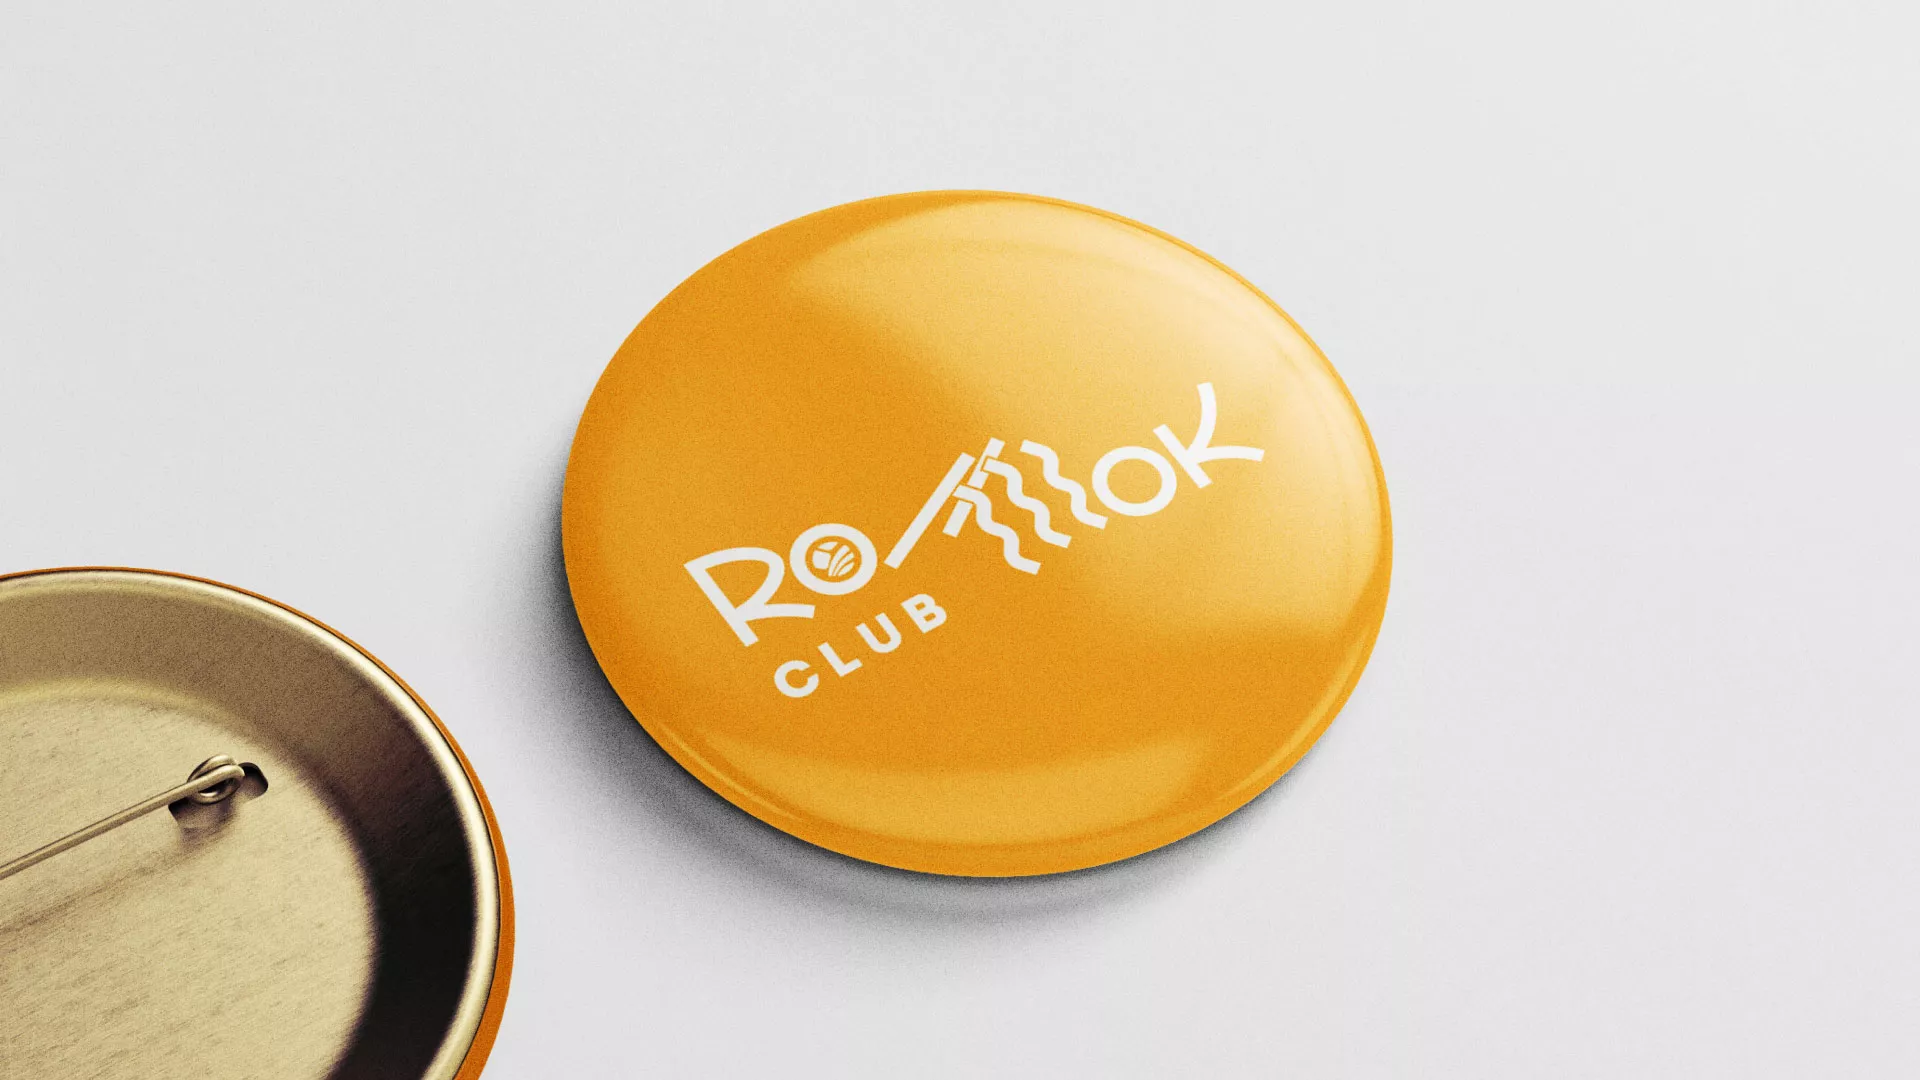 Создание логотипа суши-бара «Roll Wok Club» в Верхнем Уфалее